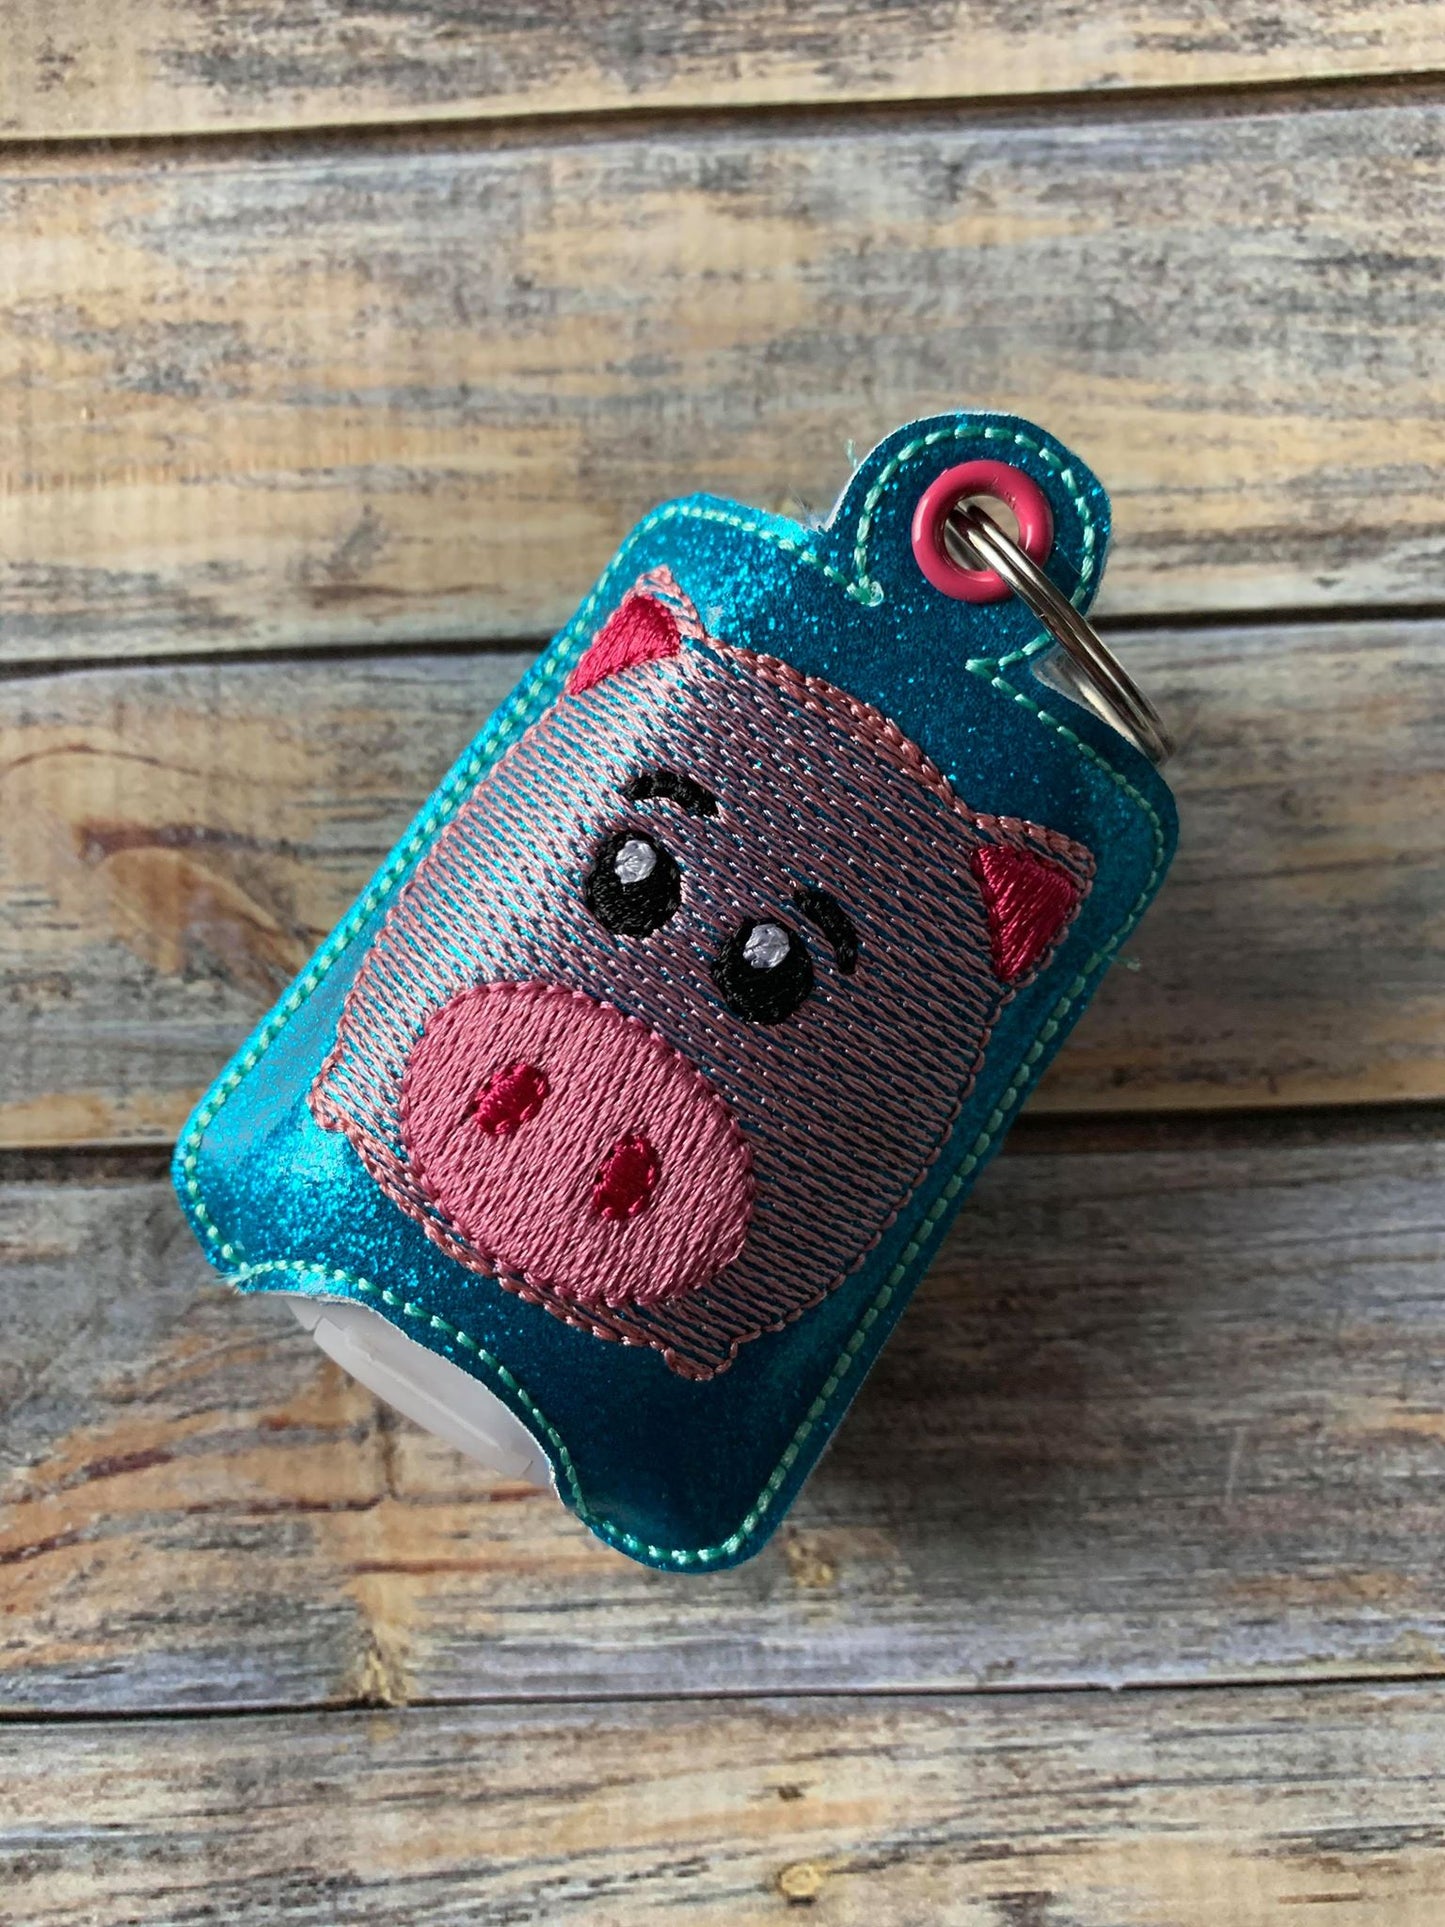 Pig Toy Sanitizer Holders - DIGITAL Embroidery DESIGN